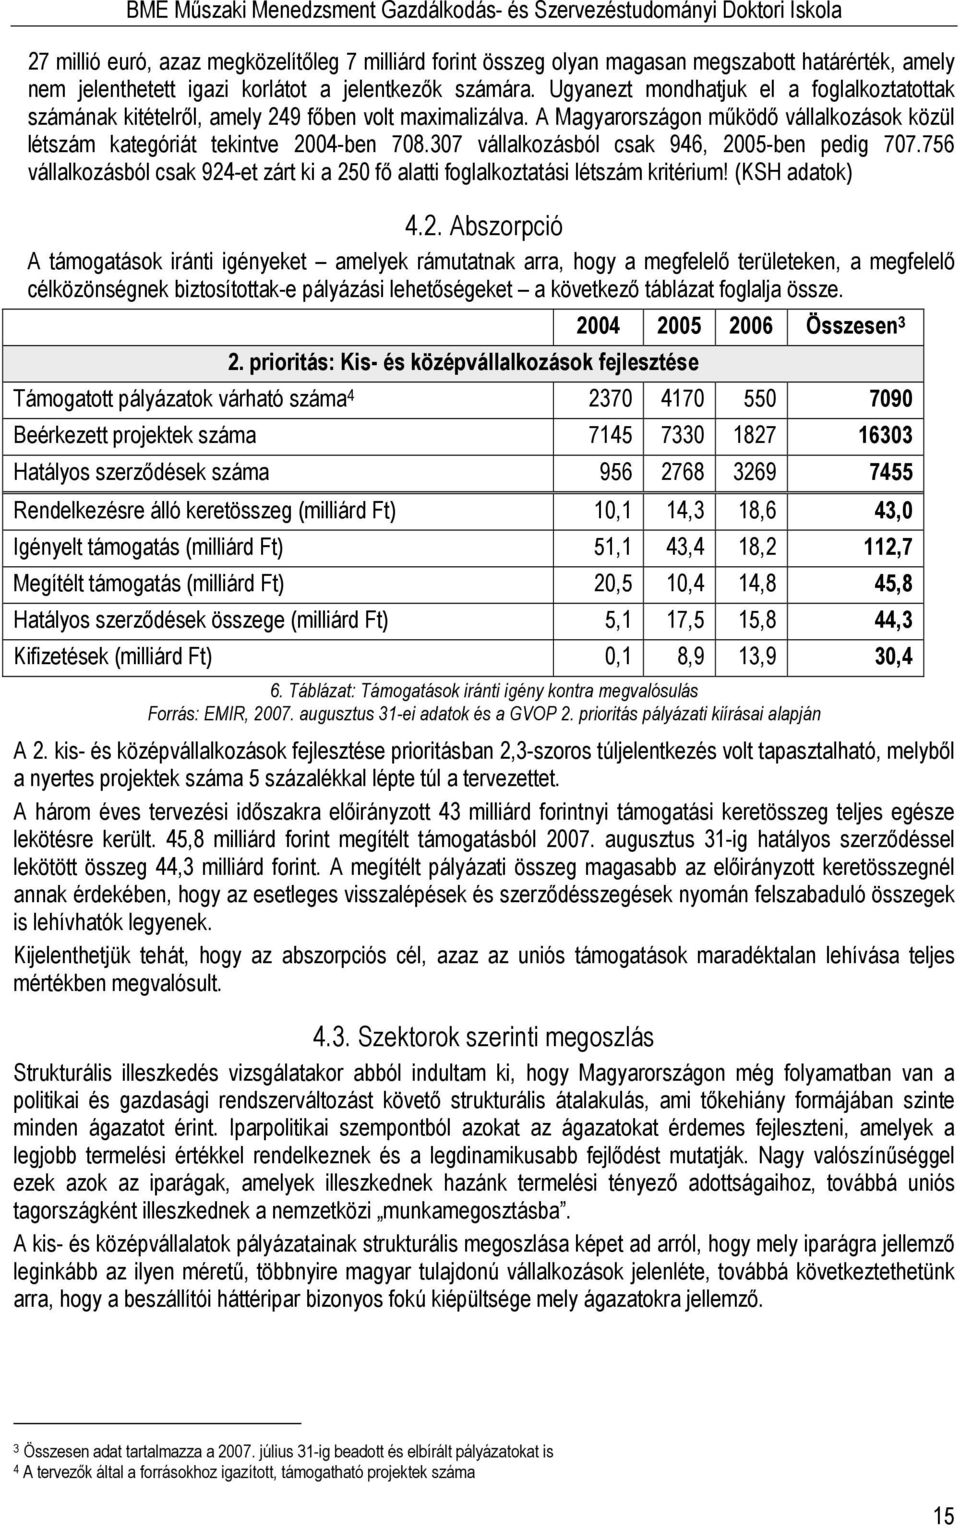 A Magyarországon mőködı vállalkozások közül létszám kategóriát tekintve 2004-ben 708.307 vállalkozásból csak 946, 2005-ben pedig 707.